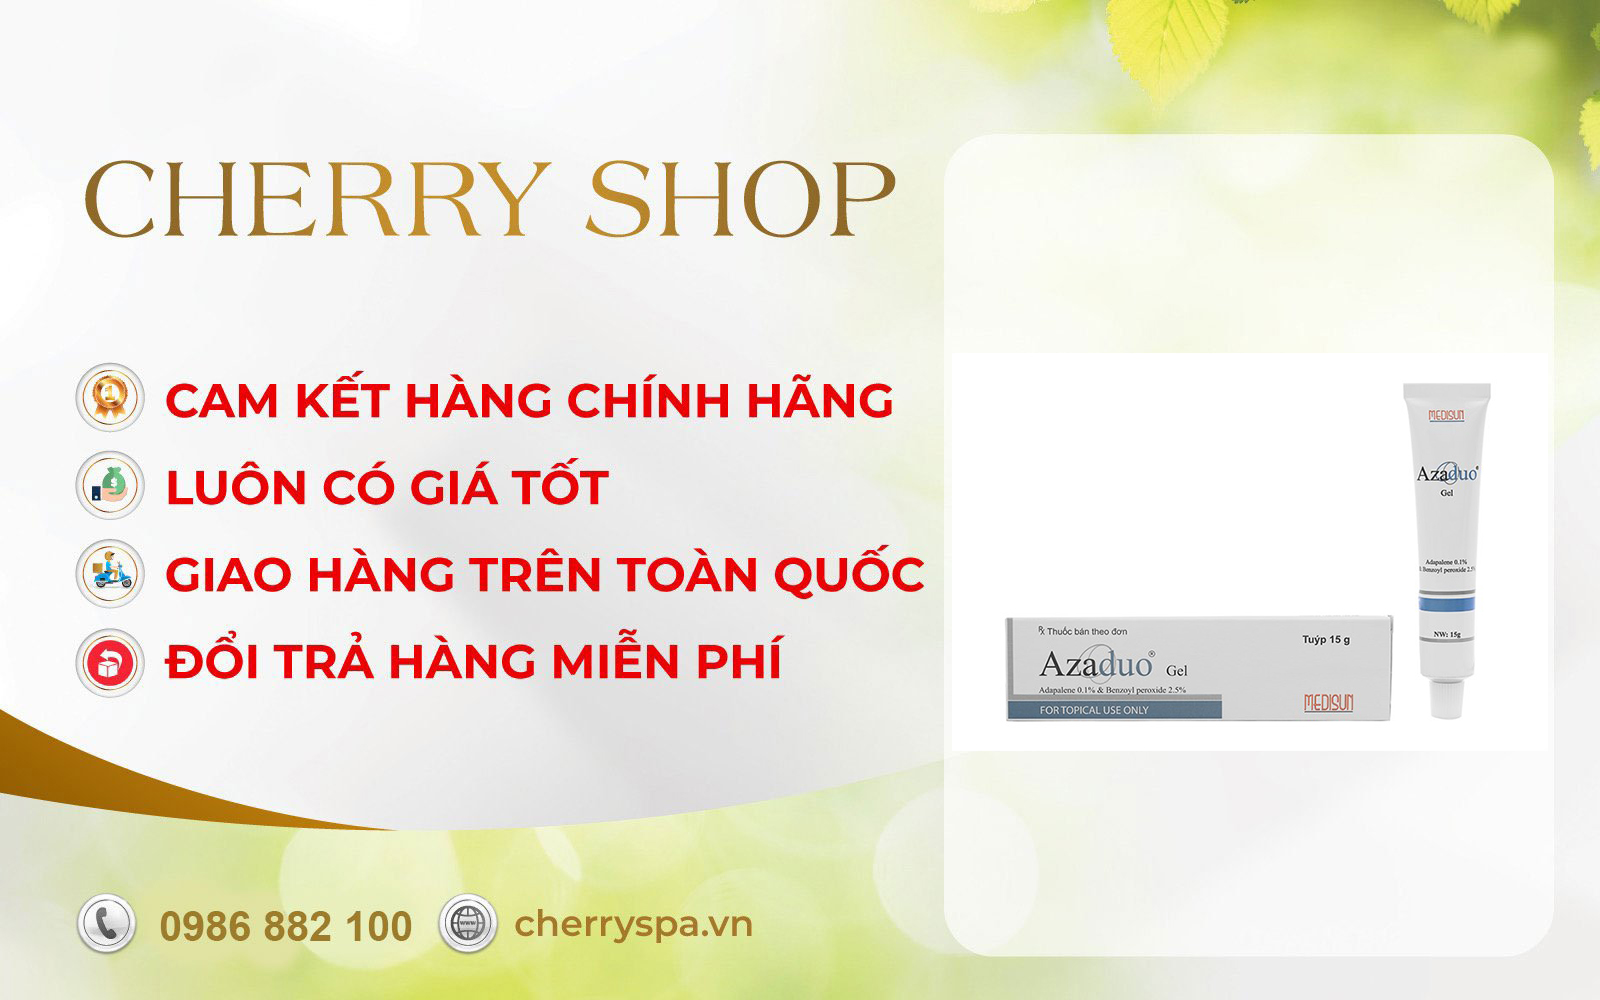 Cherry Spa hỗ trợ đổi trả sản phẩm cho khách hàng trong những trường hợp sau